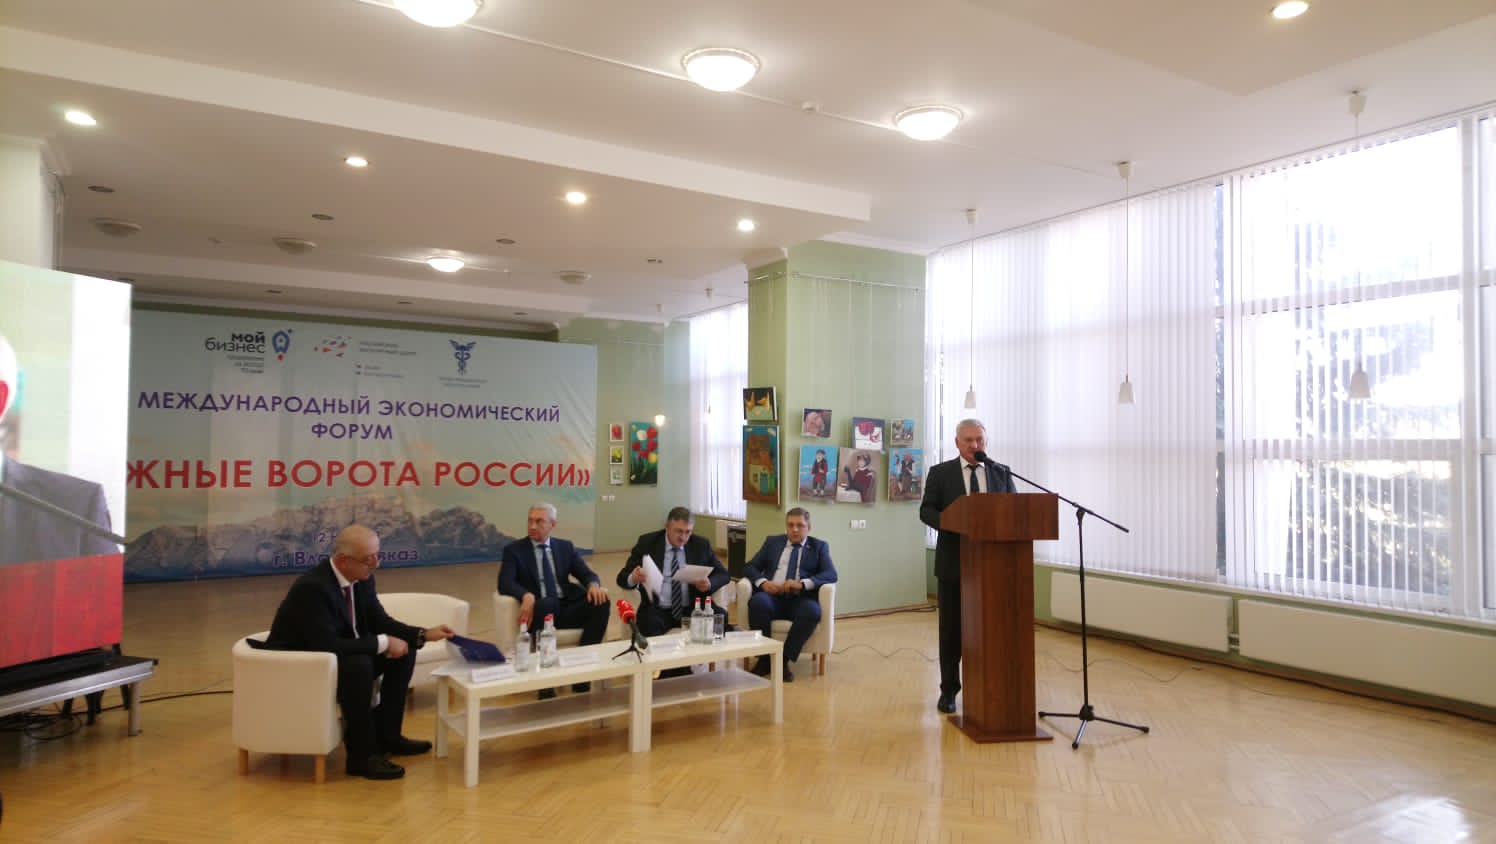 VII Международная экономическая конференция «Южные ворота России» прошла 12 ноября во Владикавказе